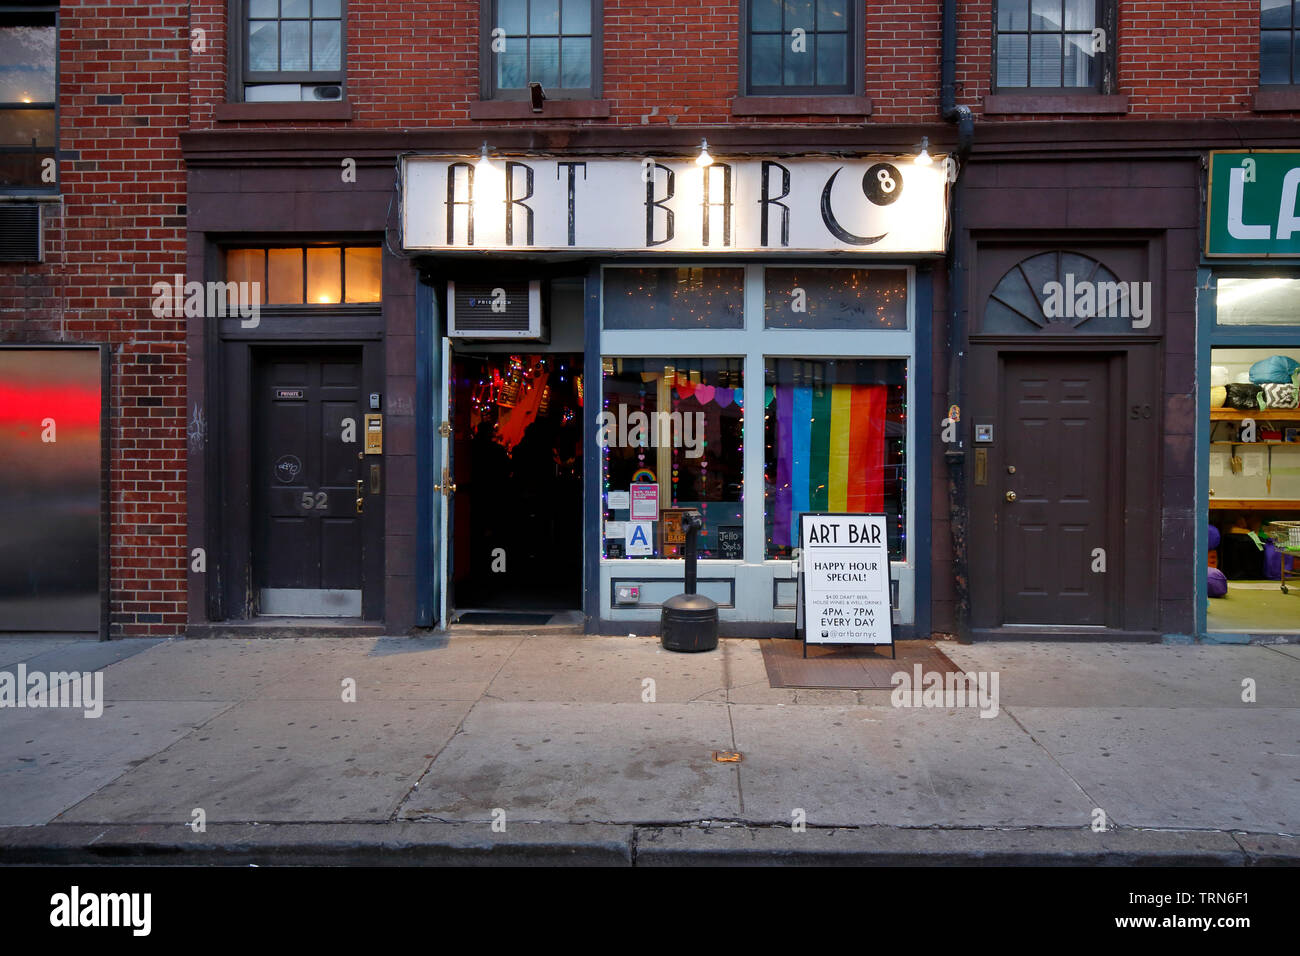 Art Bar, 52 8th Ave, New York, NY devanture extérieure d'un bar dans le quartier de Greenwich Village de Manhattan. Banque D'Images